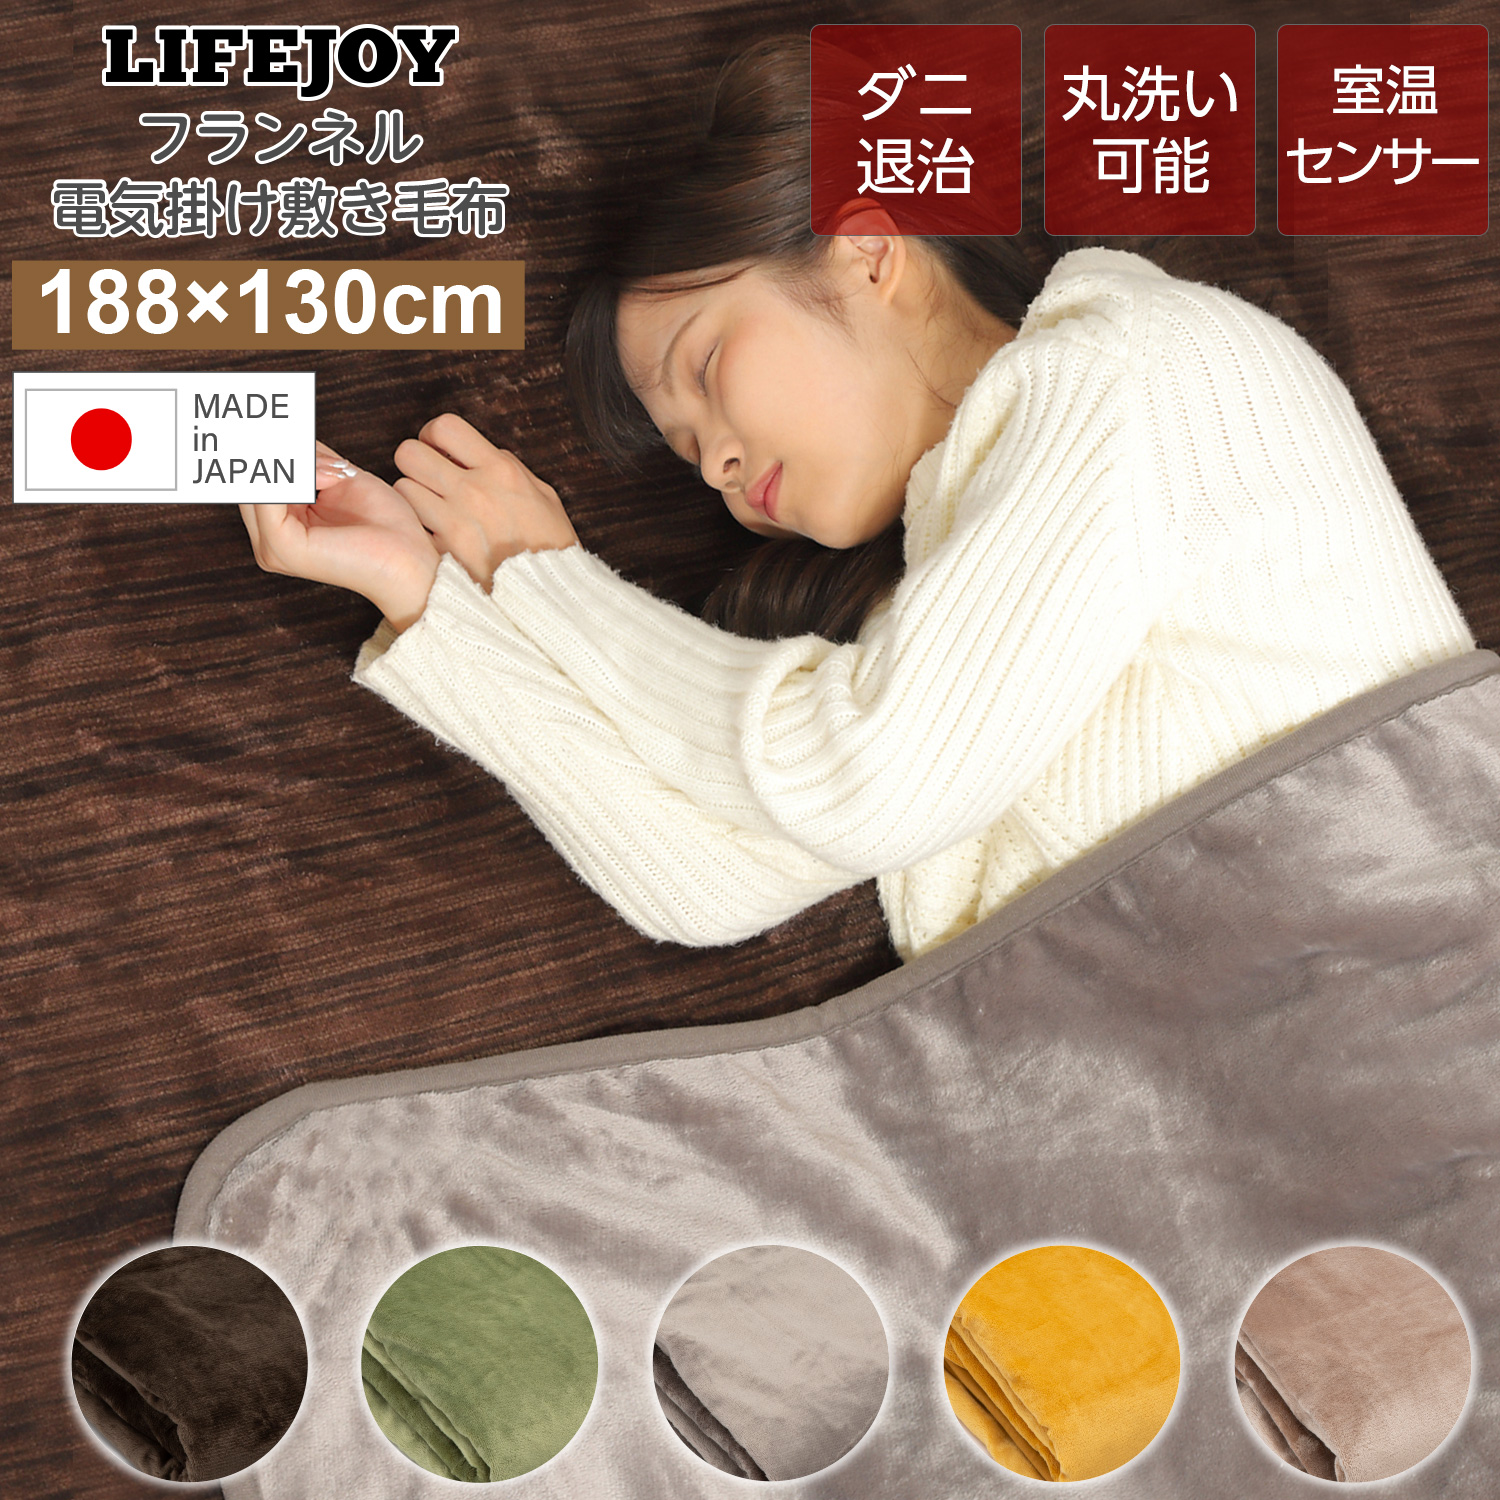 日本製 電気毛布 掛け敷き フランネル 188×130cm 洗濯可 ダニ退治 室温 